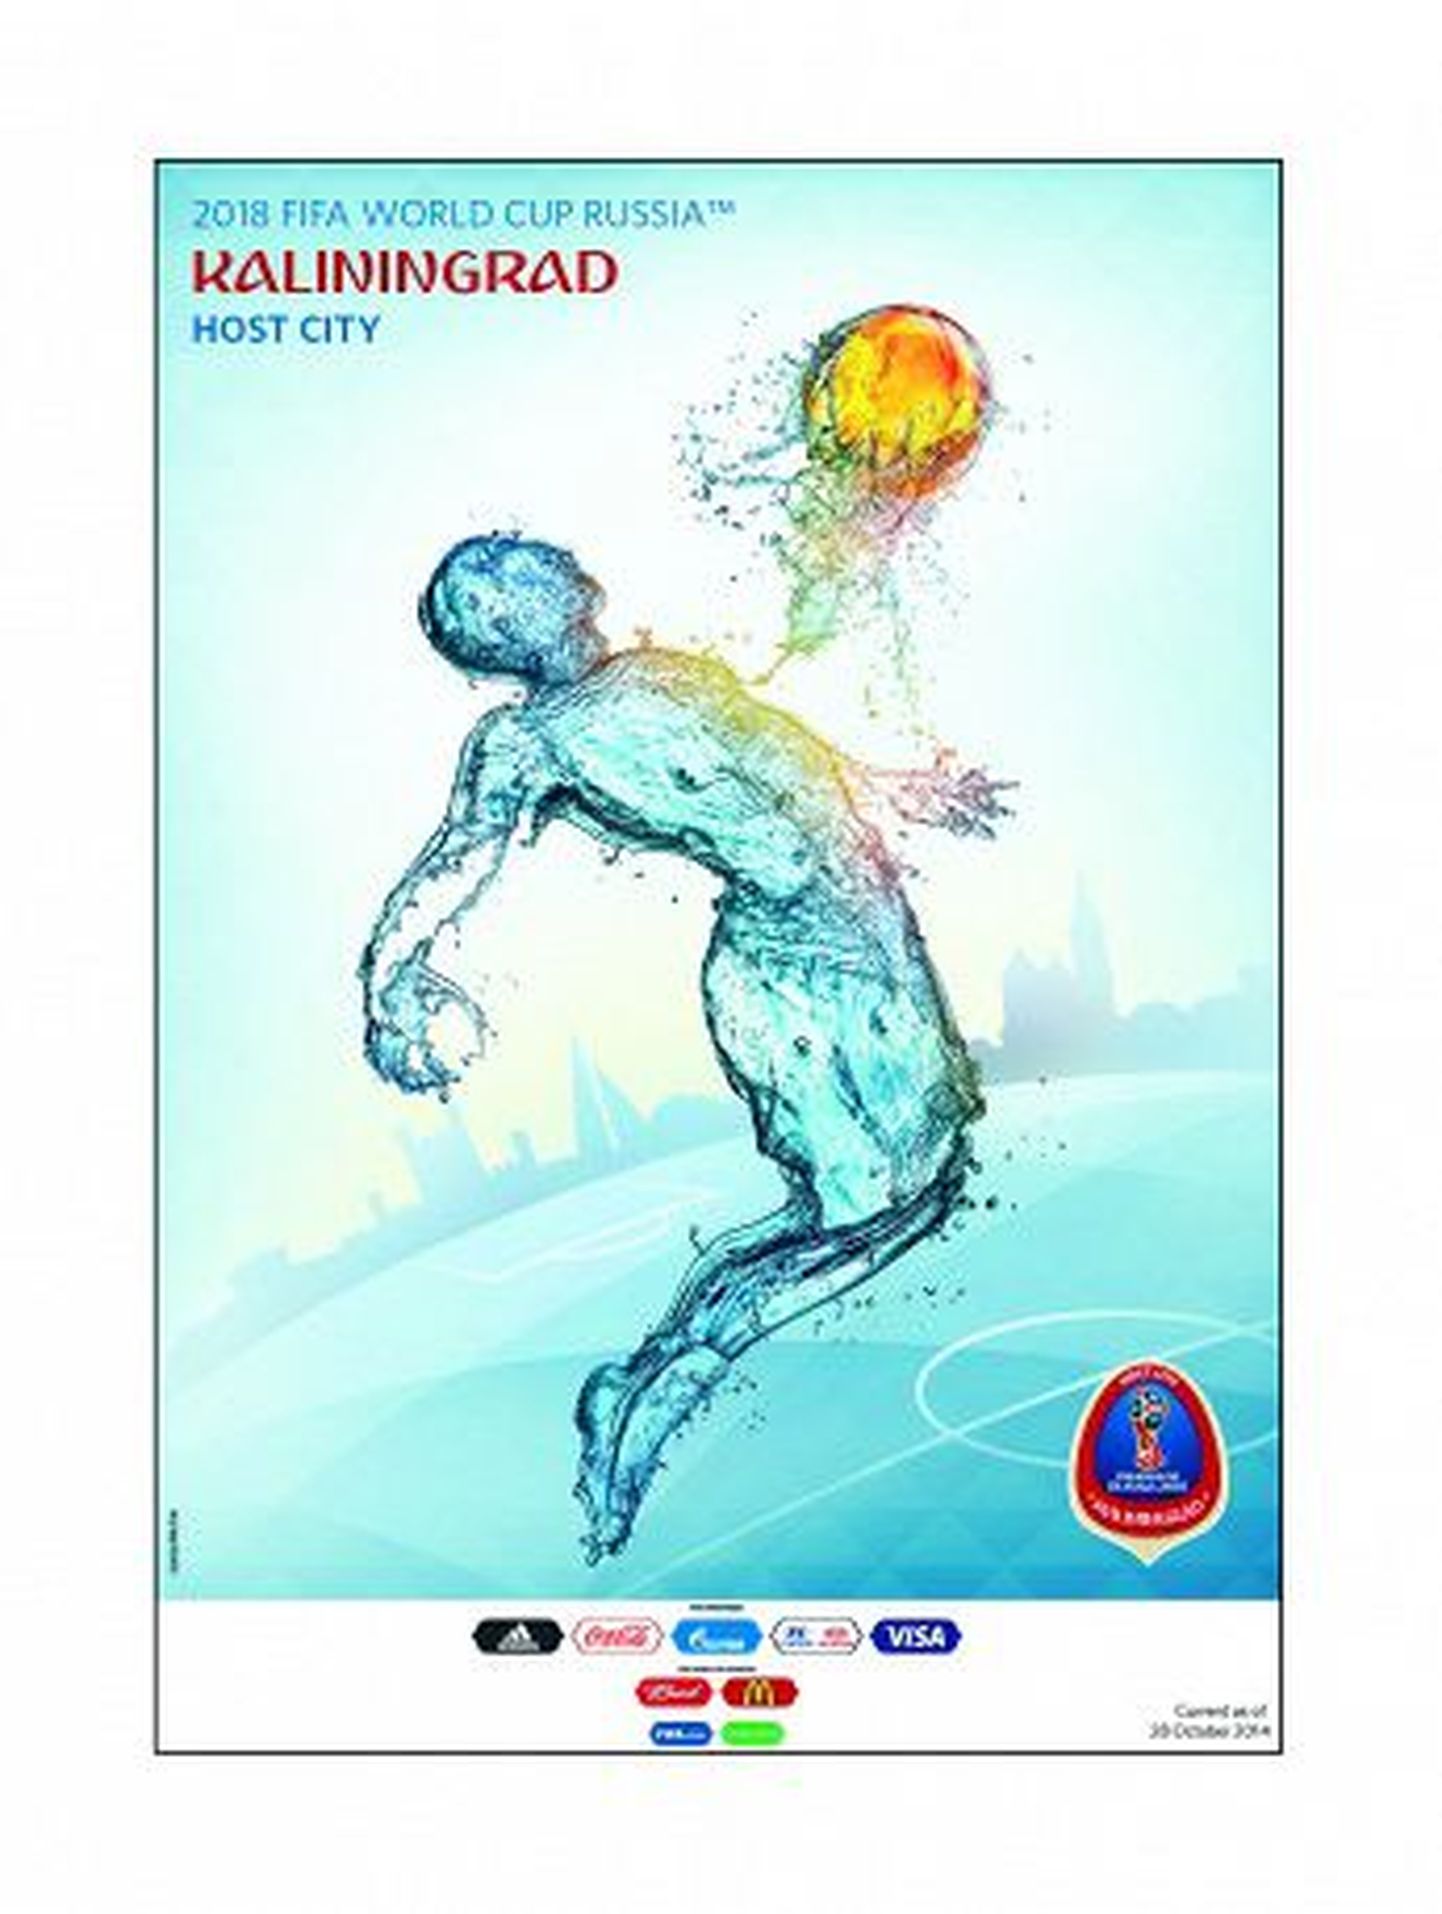 Плакат Калининграда как города, принимающего ЧМ-2018. В центре плаката - фигура футболиста, состоящая из воды. Он принимает на грудь футбольный мяч, сделанный из янтаря - еще одного символа Балтики.